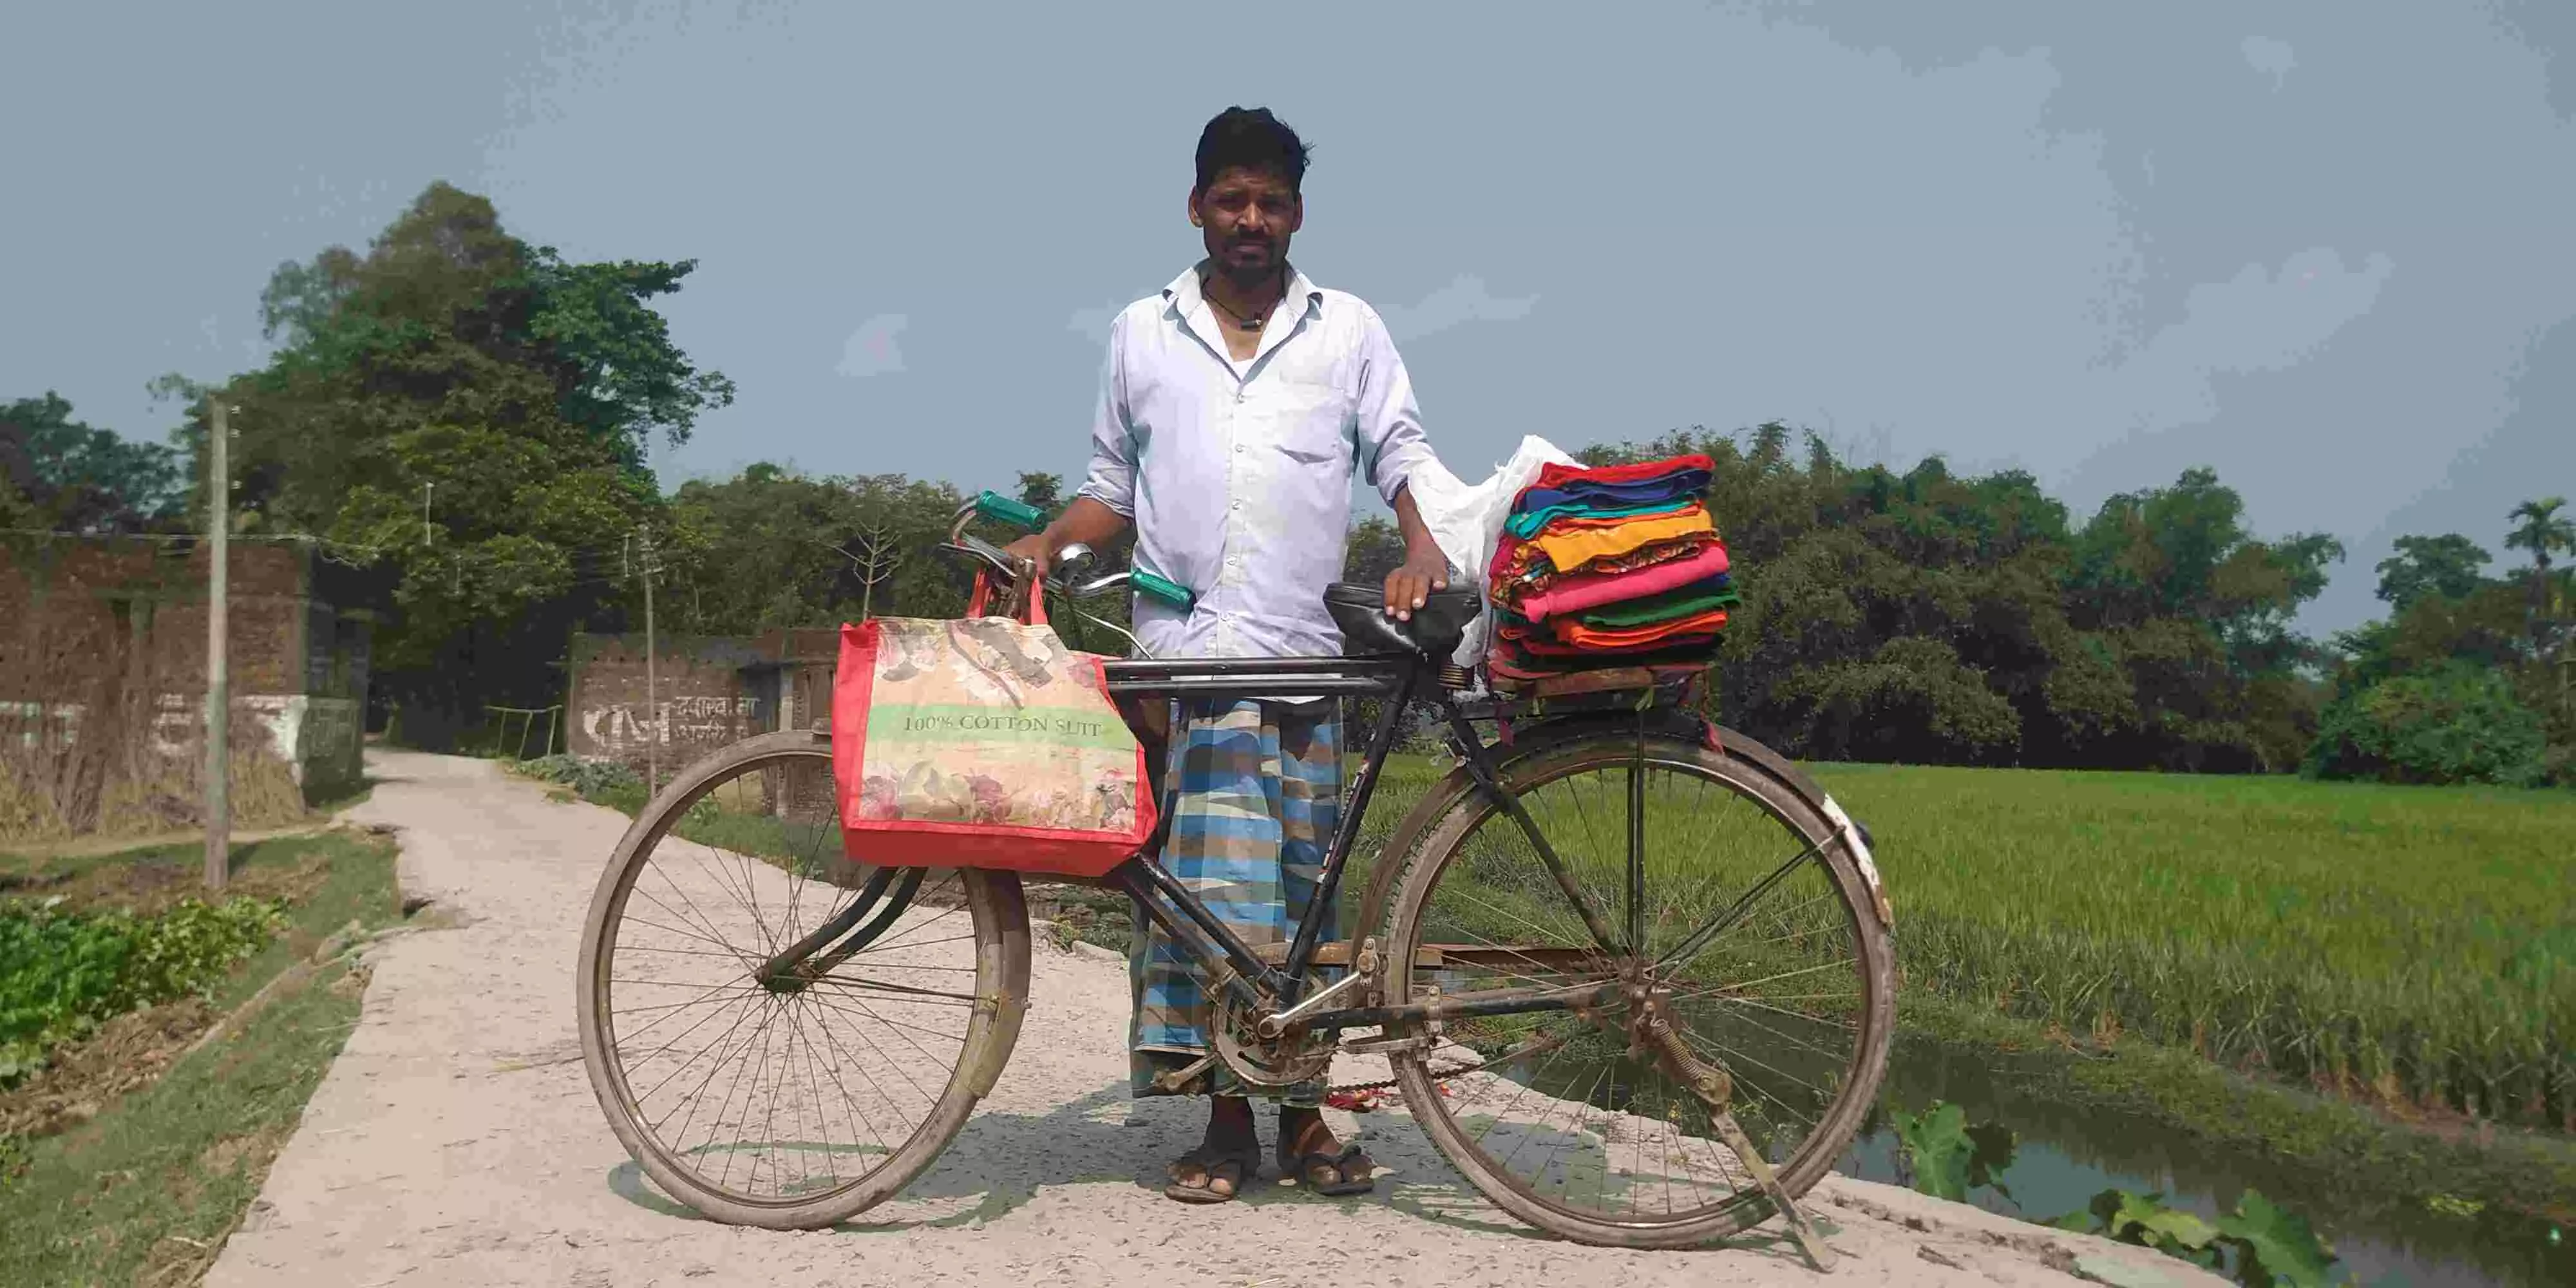 अपने इलाके में काम नहीं मिल रहा, सुबह से 30 किलोमीटर साईकिल चलाने पर सिर्फ 10 रुपये की आमदनी हुई है